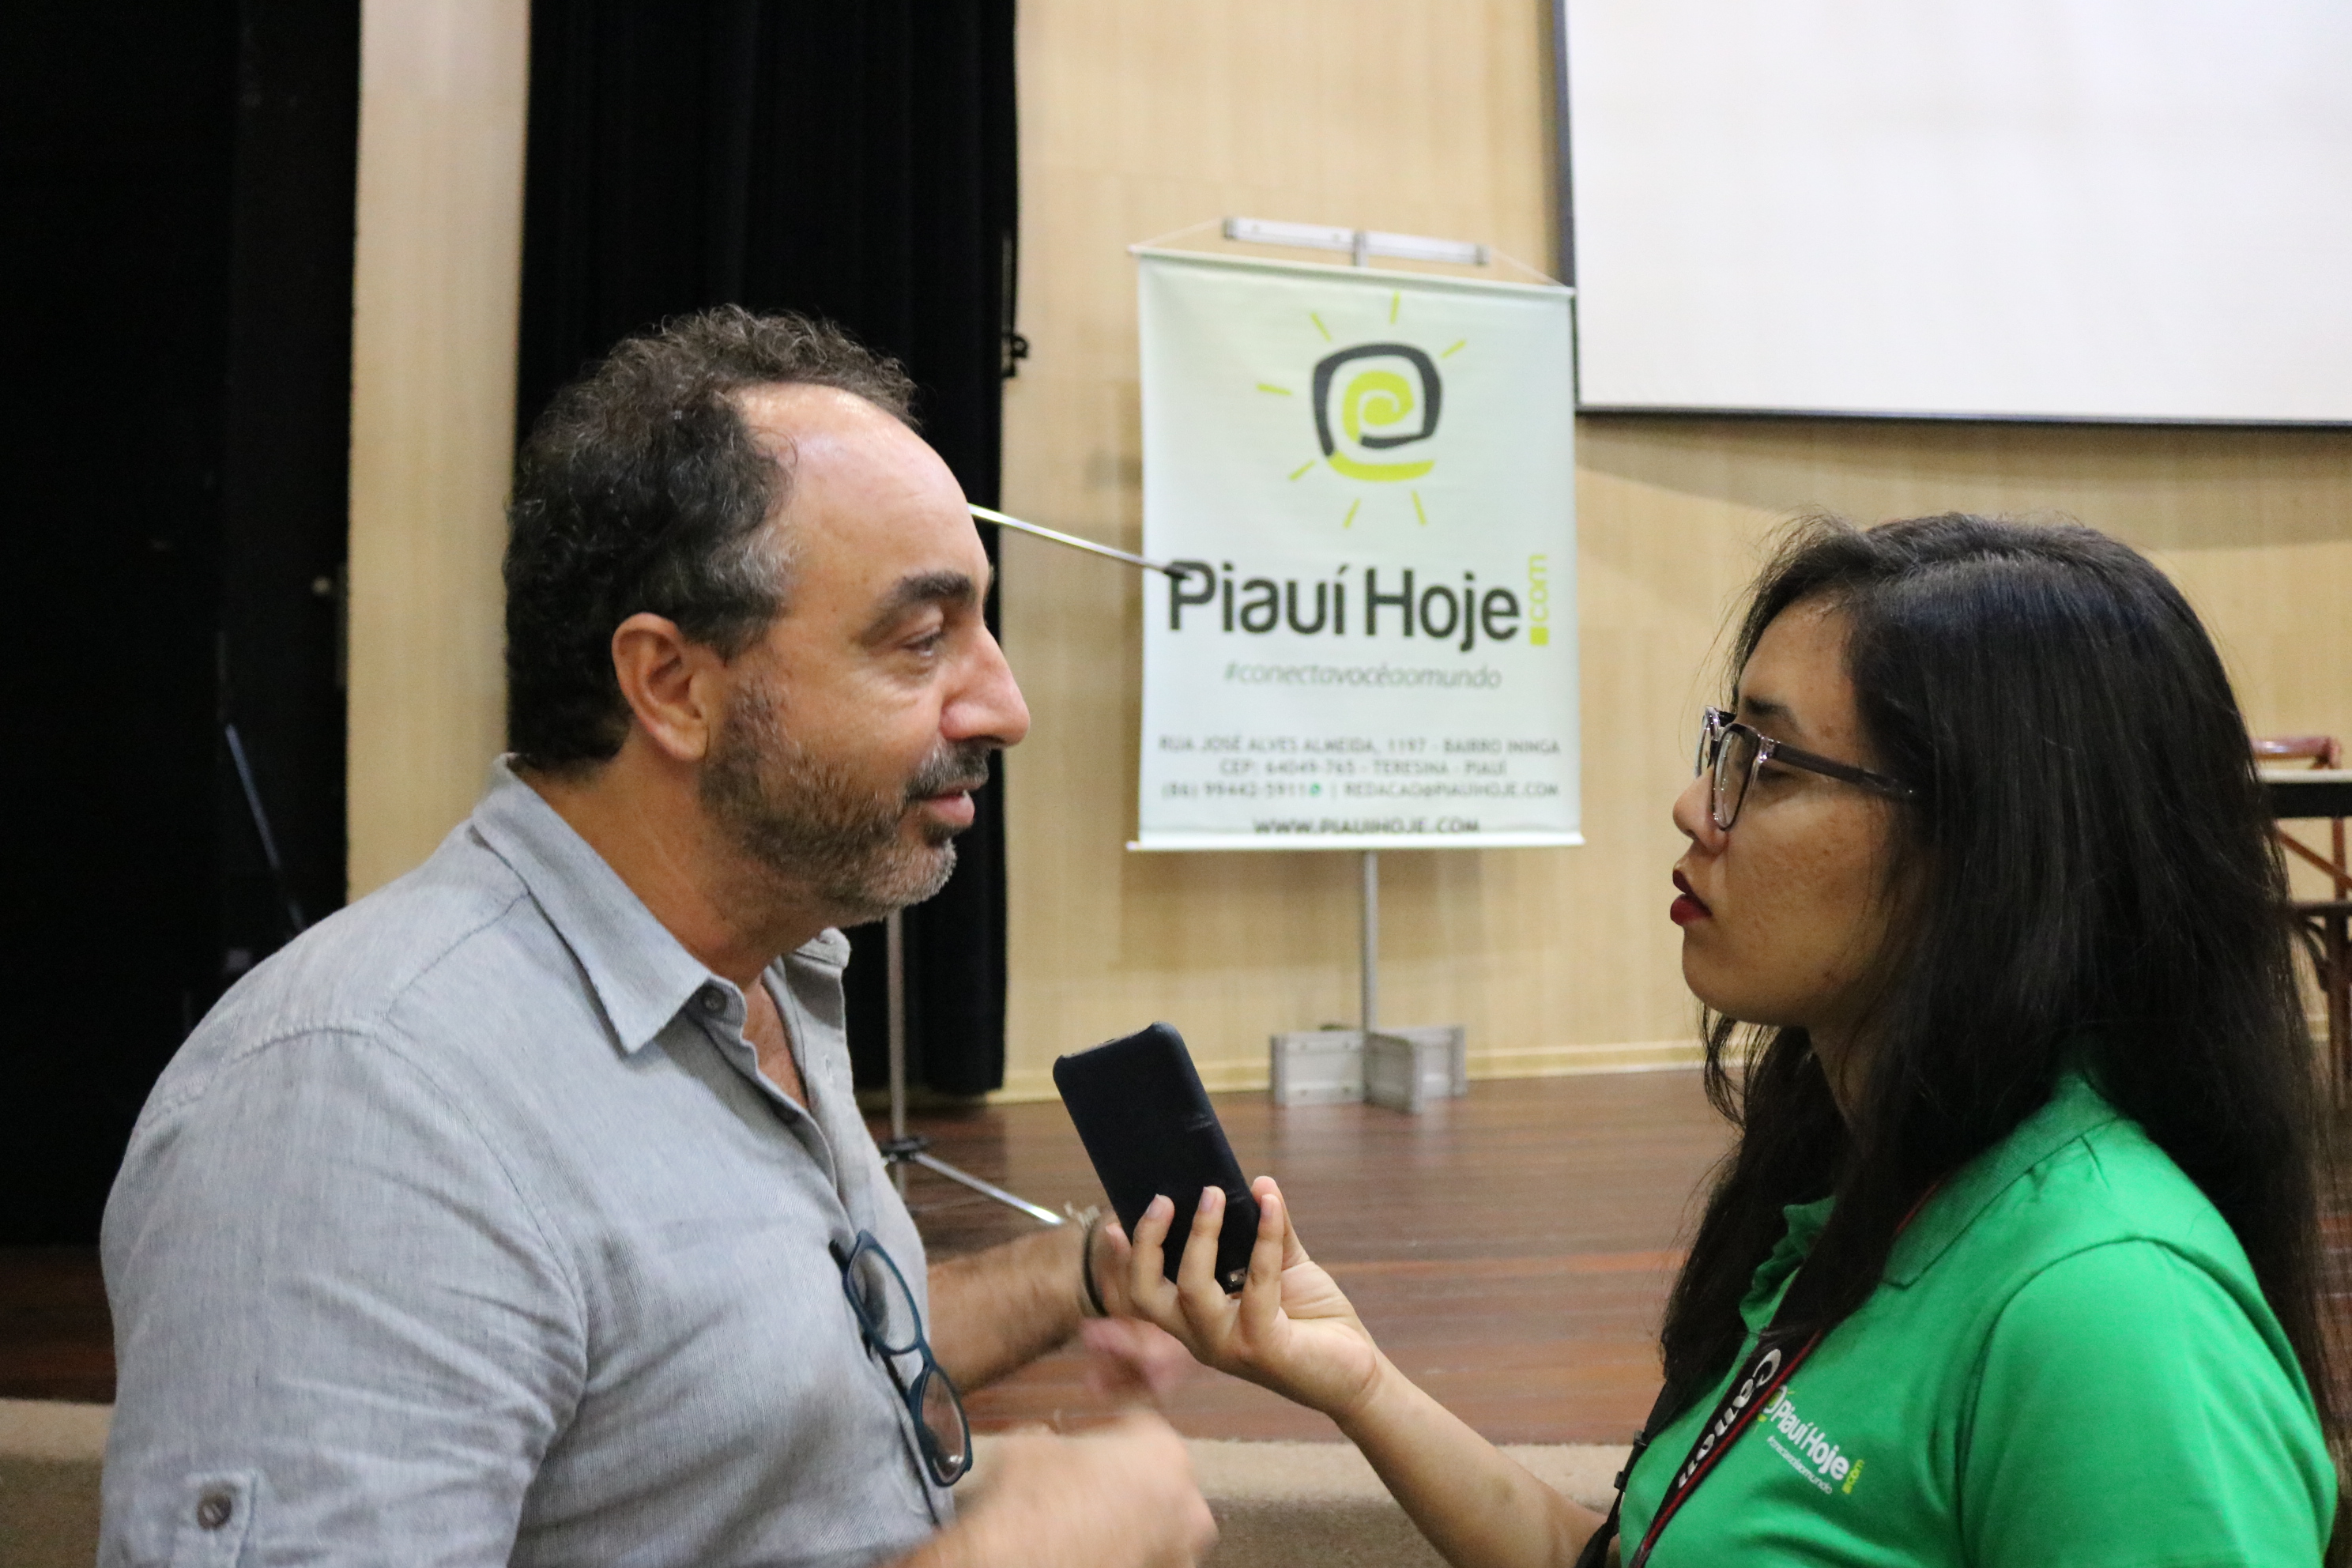 Jornalista Renato Rovai é entrevistado pelo portal